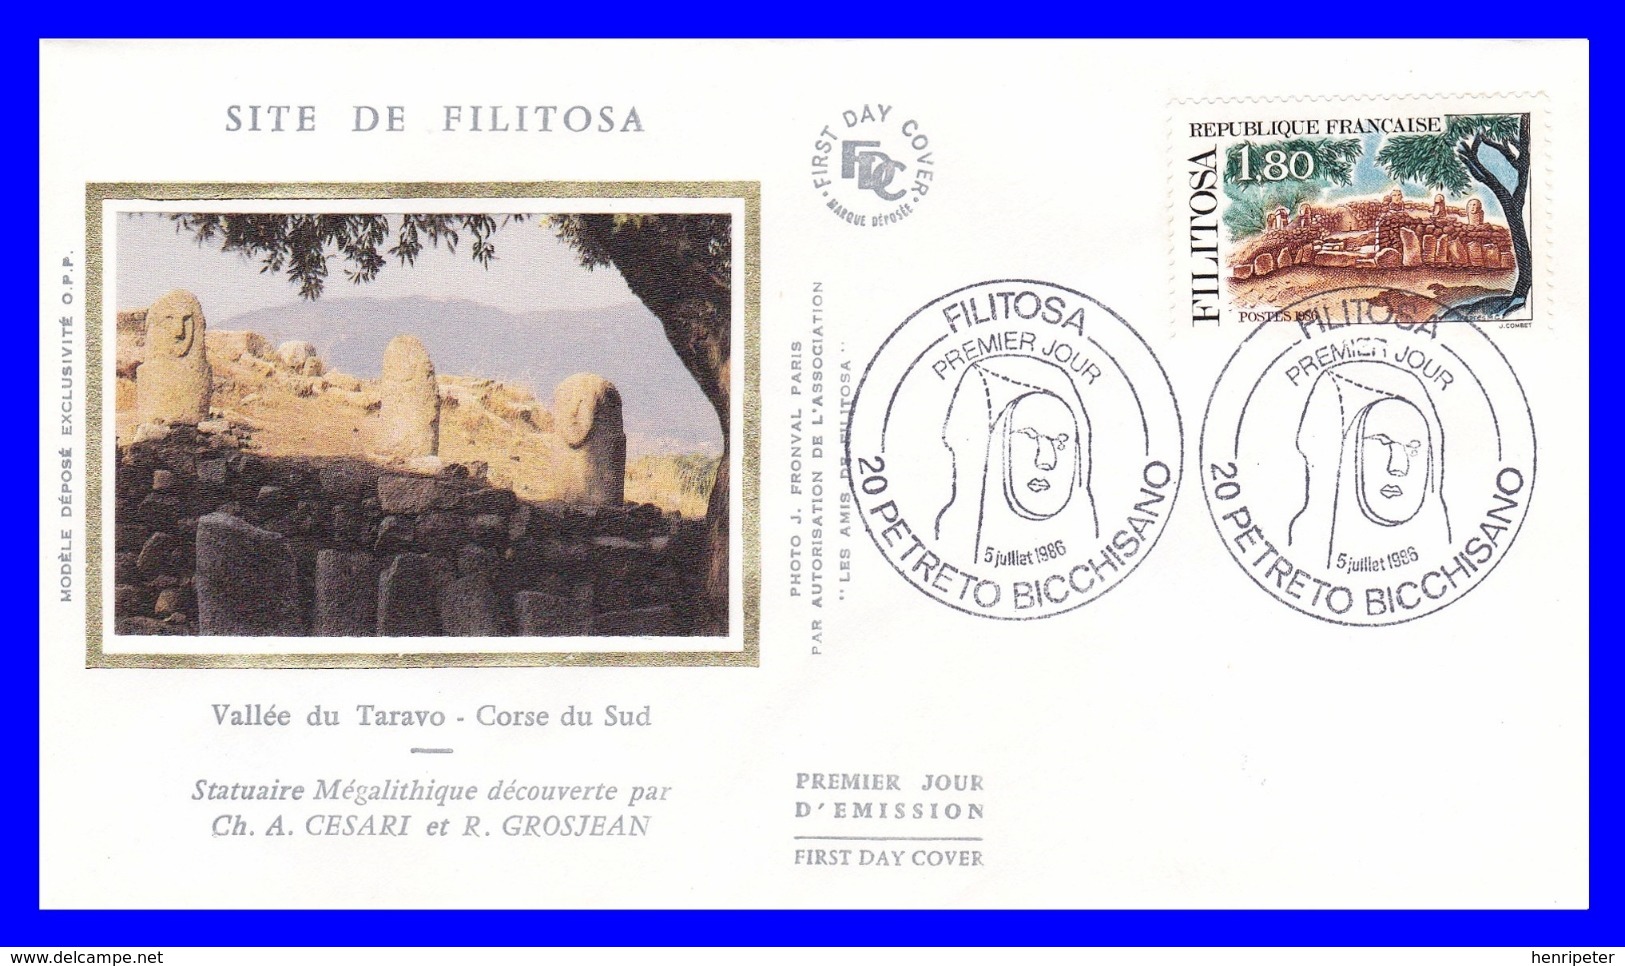 2401 (Yvert) Sur Enveloppe Premier Jour Illustrée Sur Soie - Série Touristique. Site De Filitosa - France 1986 - 1980-1989